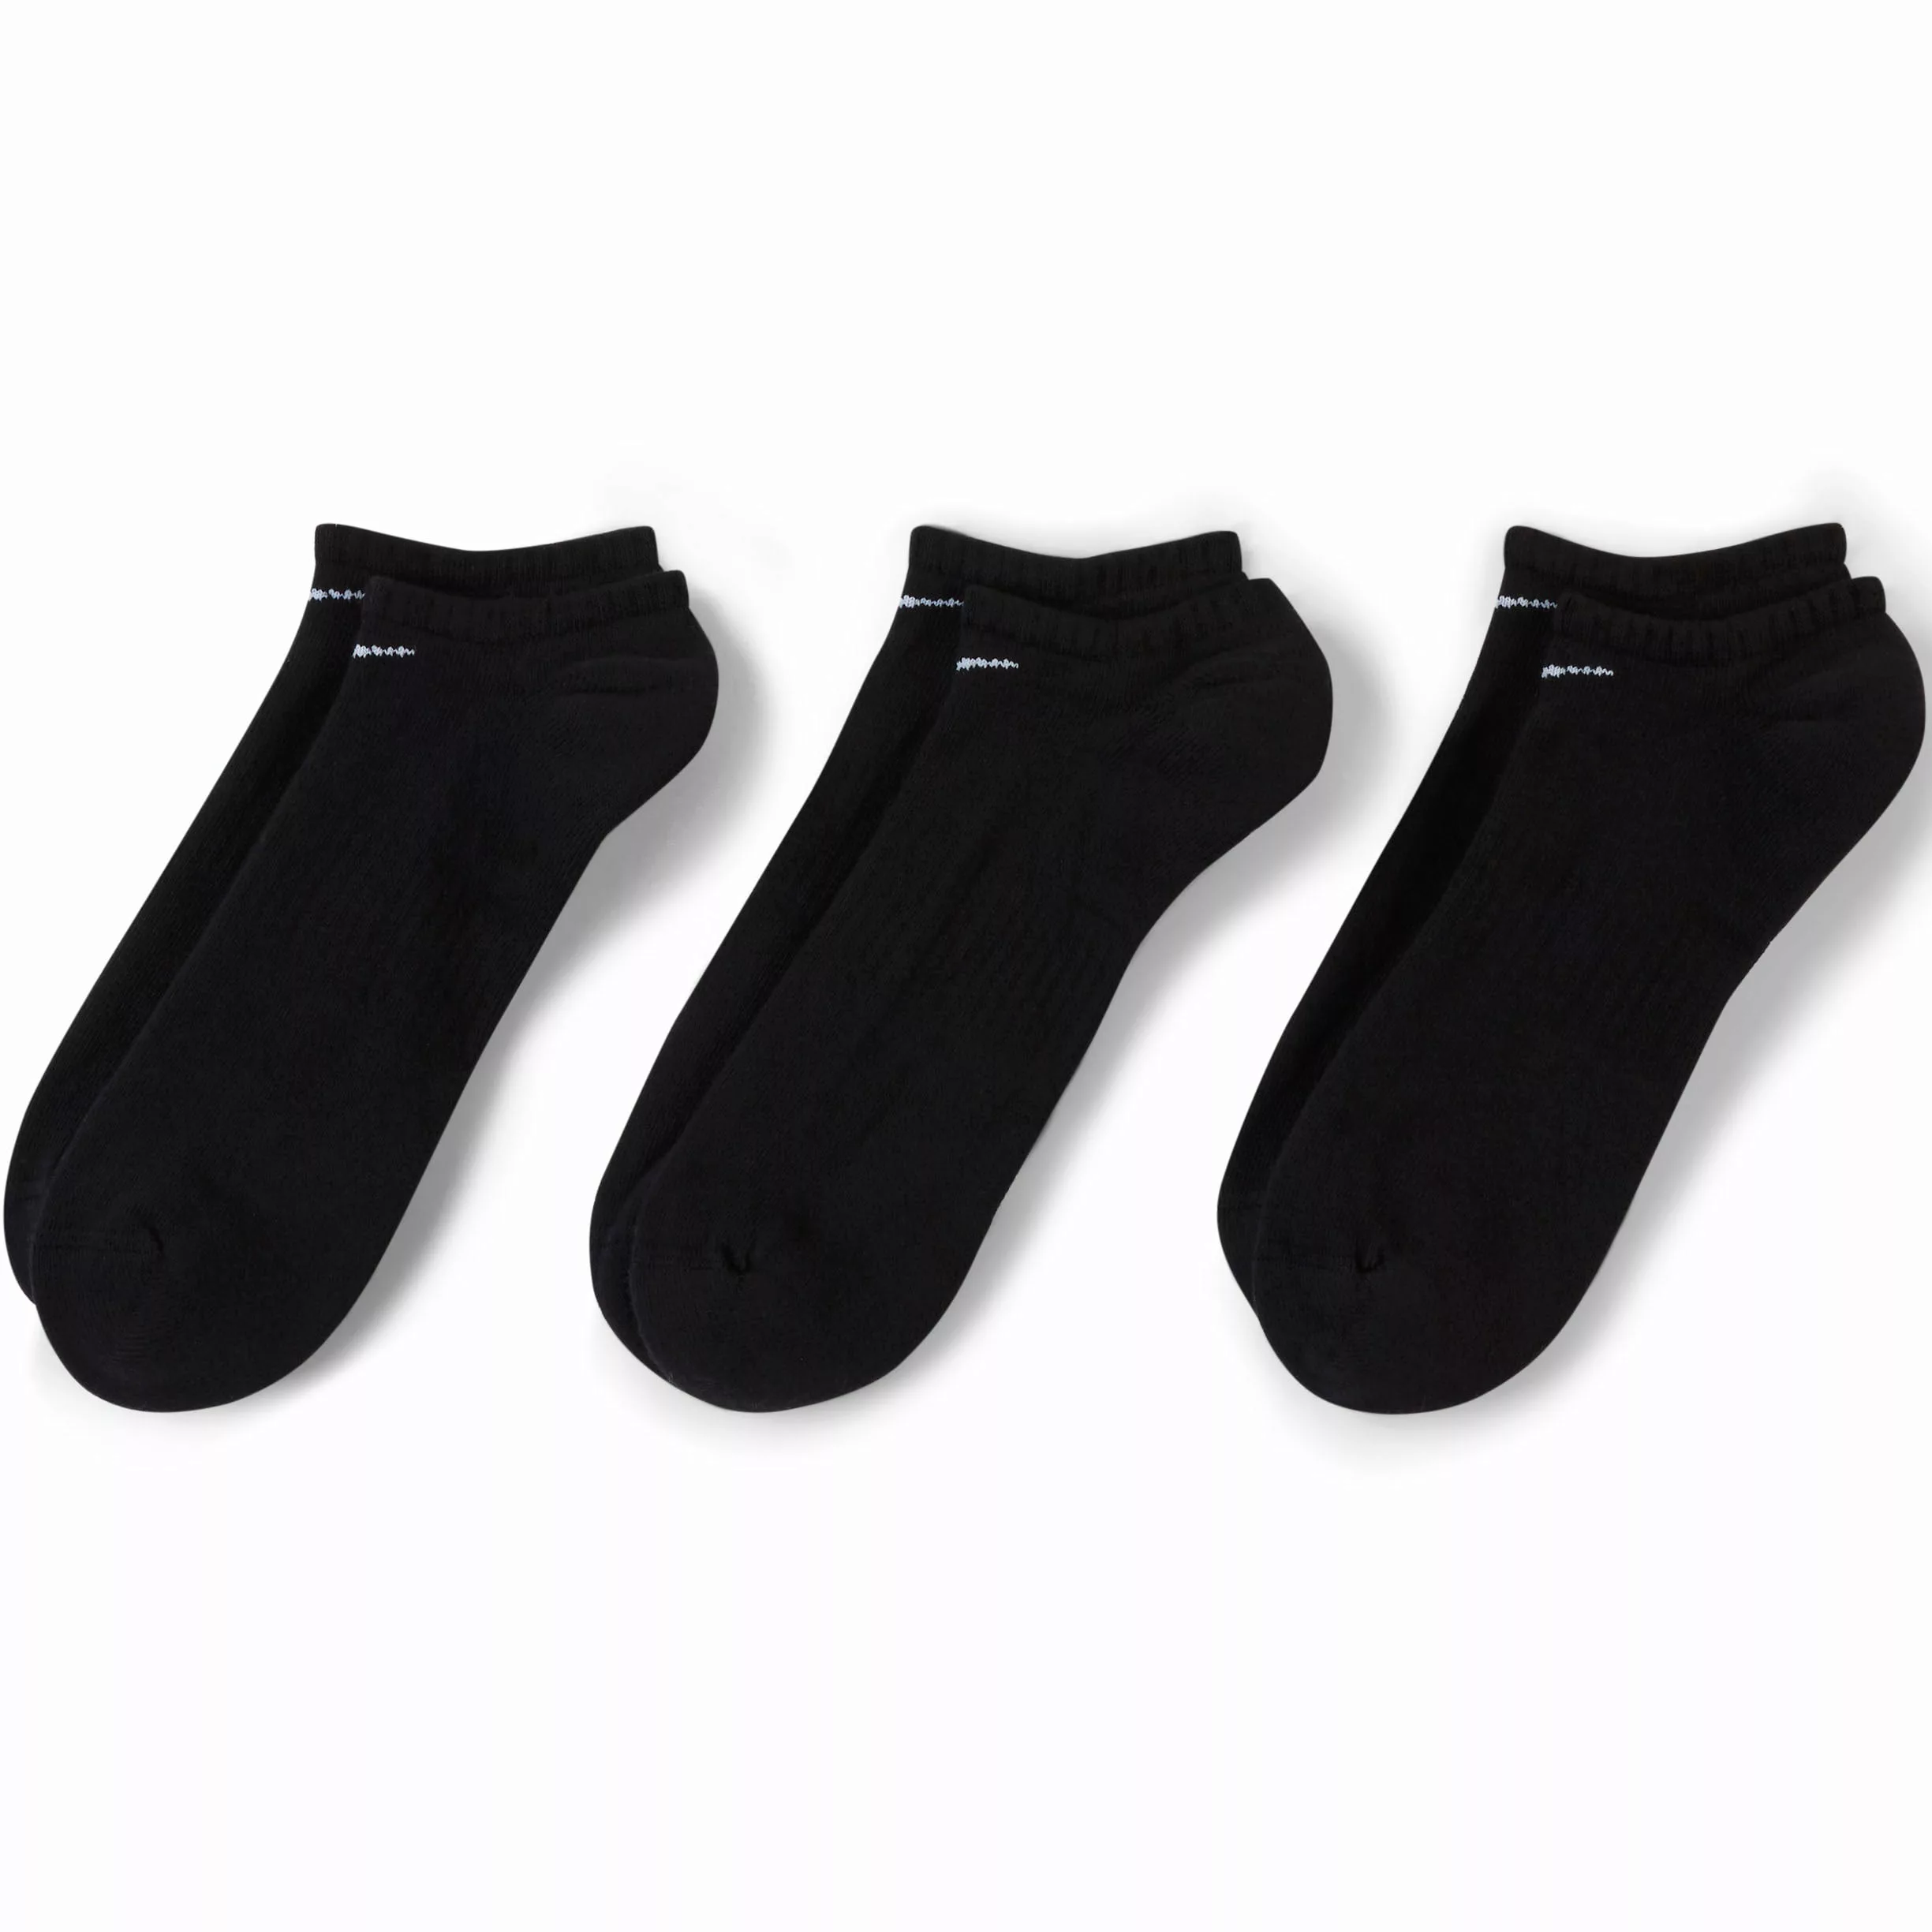 Nike Everyday Cushion No Show Socken 3 Paare EU 42-46 Black / White günstig online kaufen